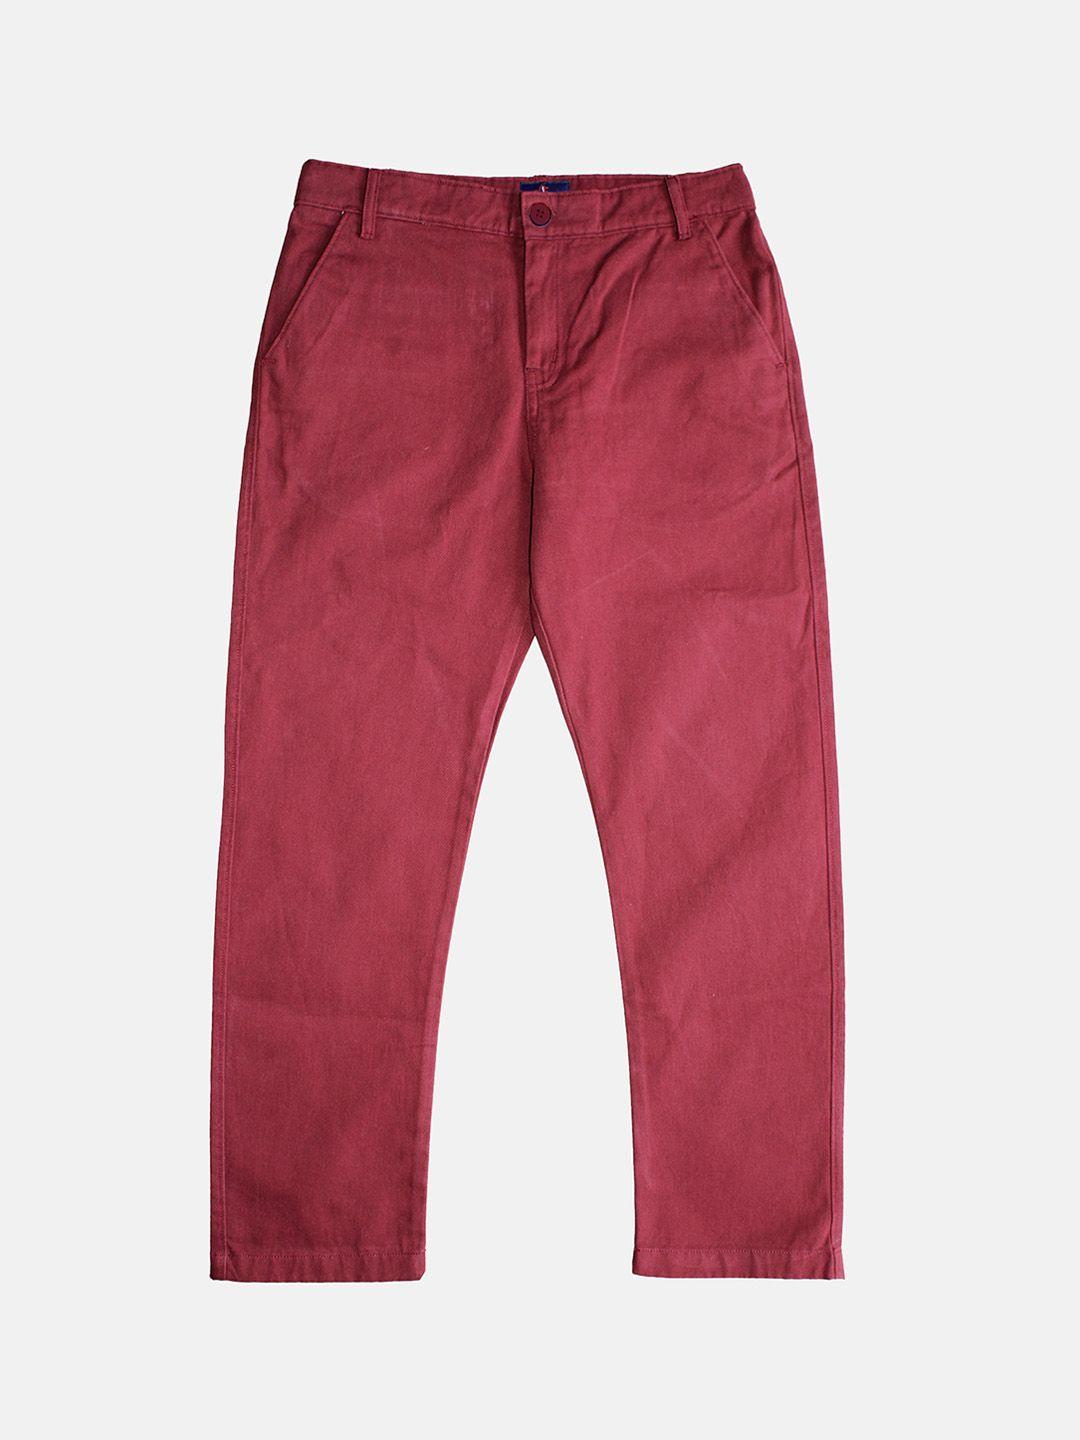 kiddopanti boys pure cotton chinos trousers